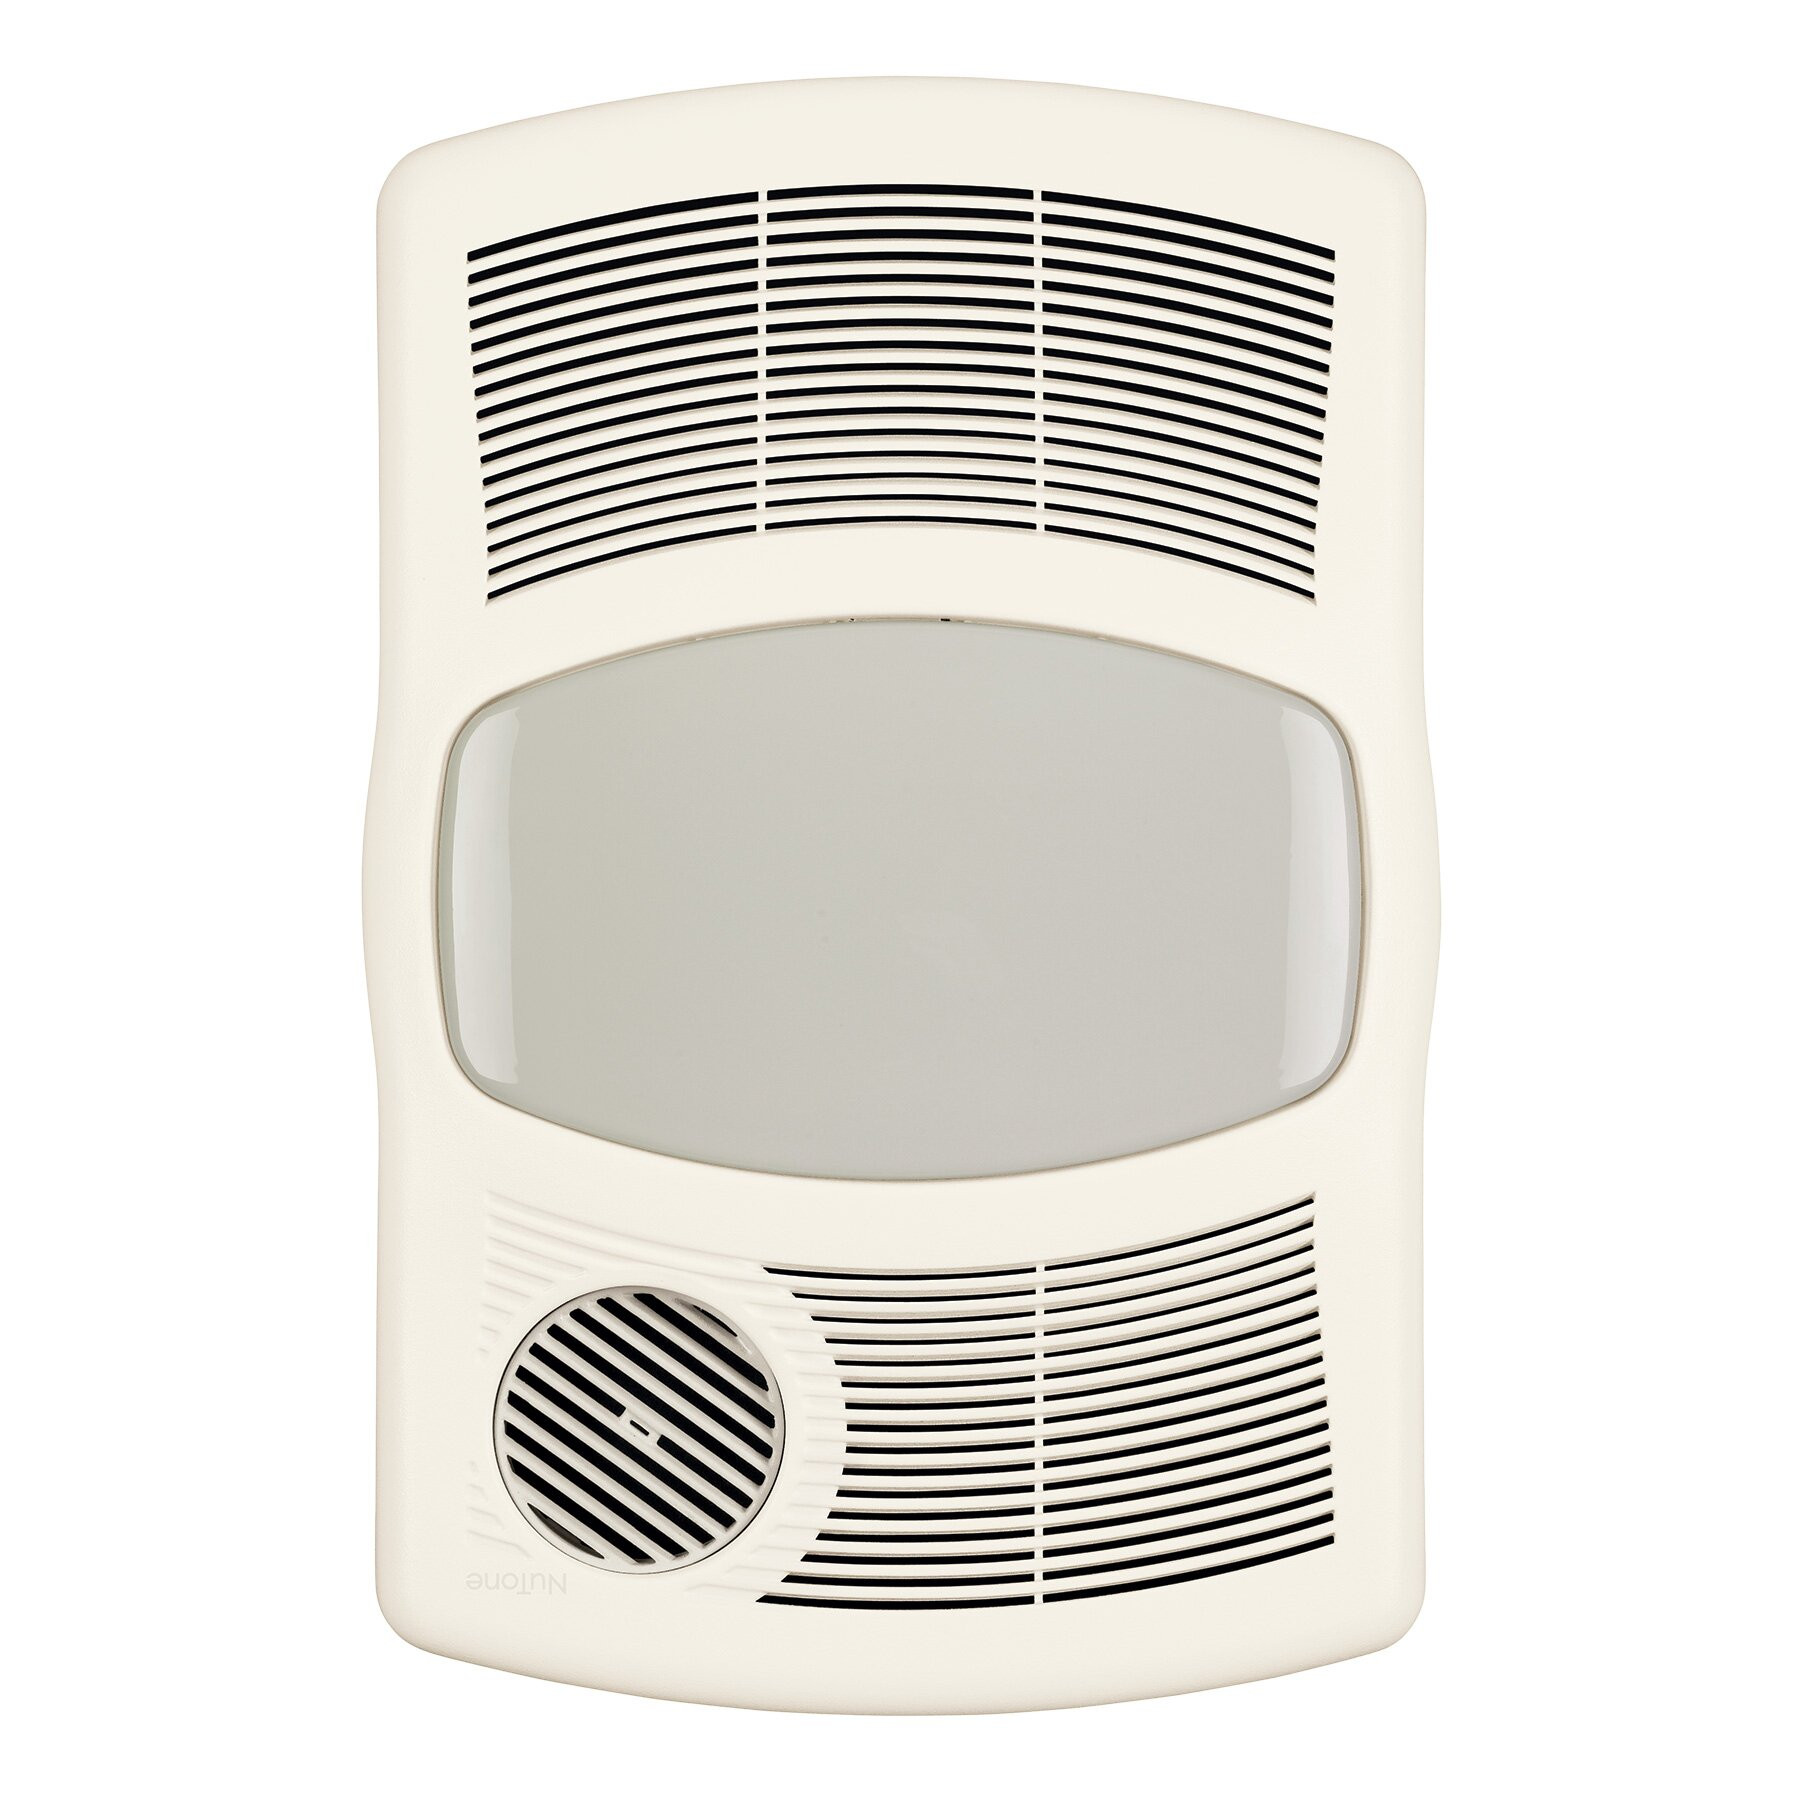 Bathroom Fan Light Heater
 Broan 100 CFM Exhaust Bathroom Fan with Heater & Reviews